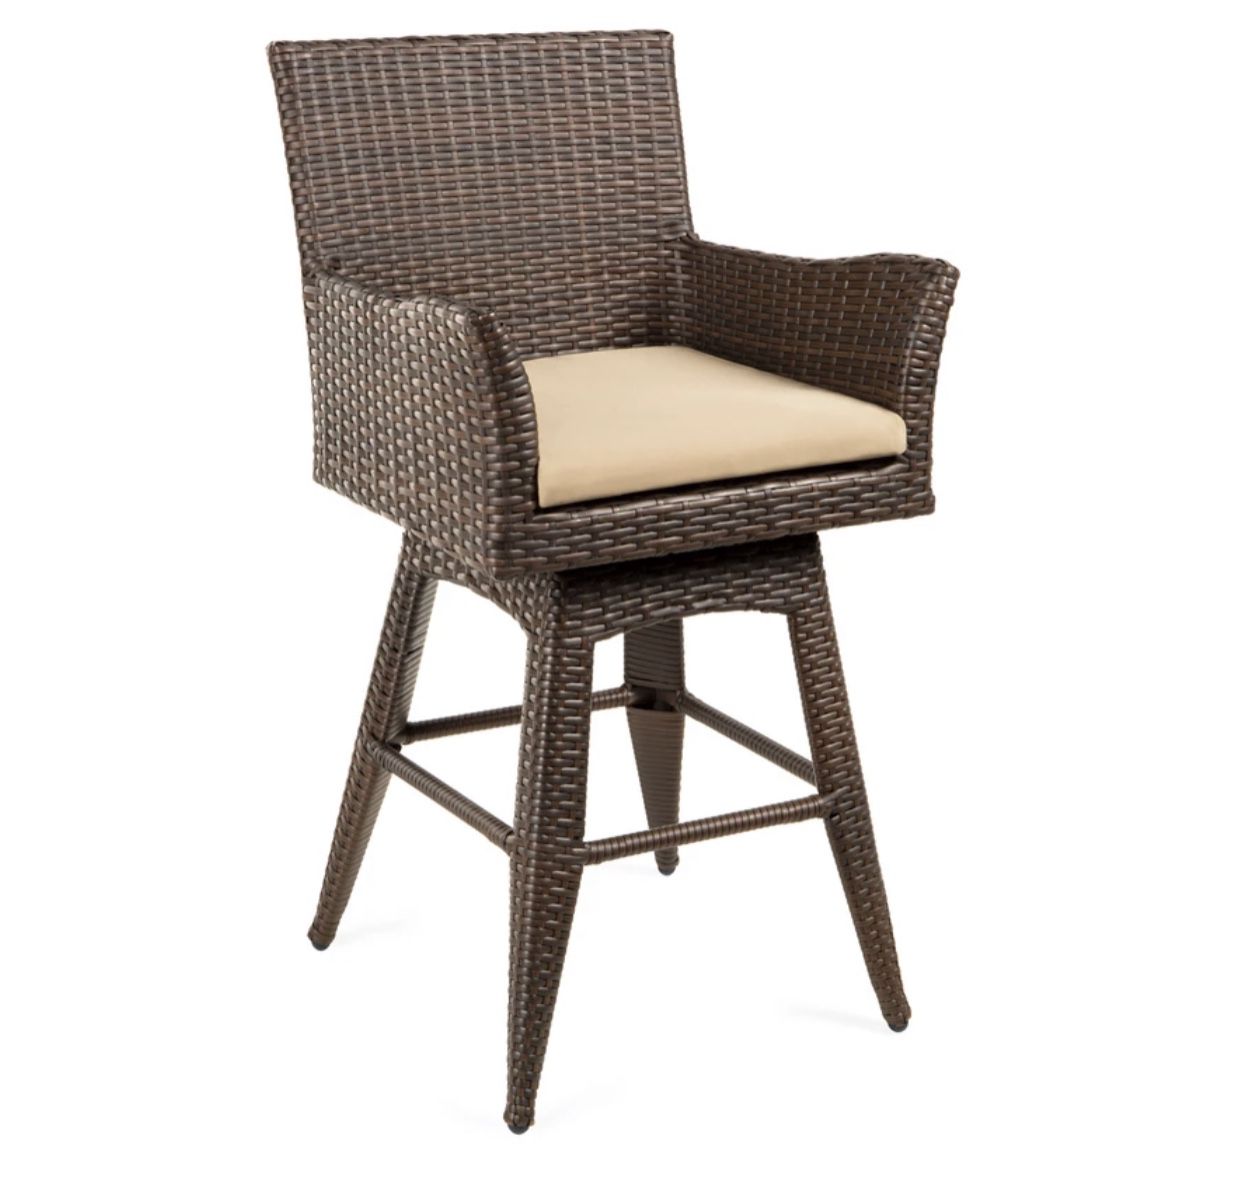 2 pcs swivel chair outdoor/indoor